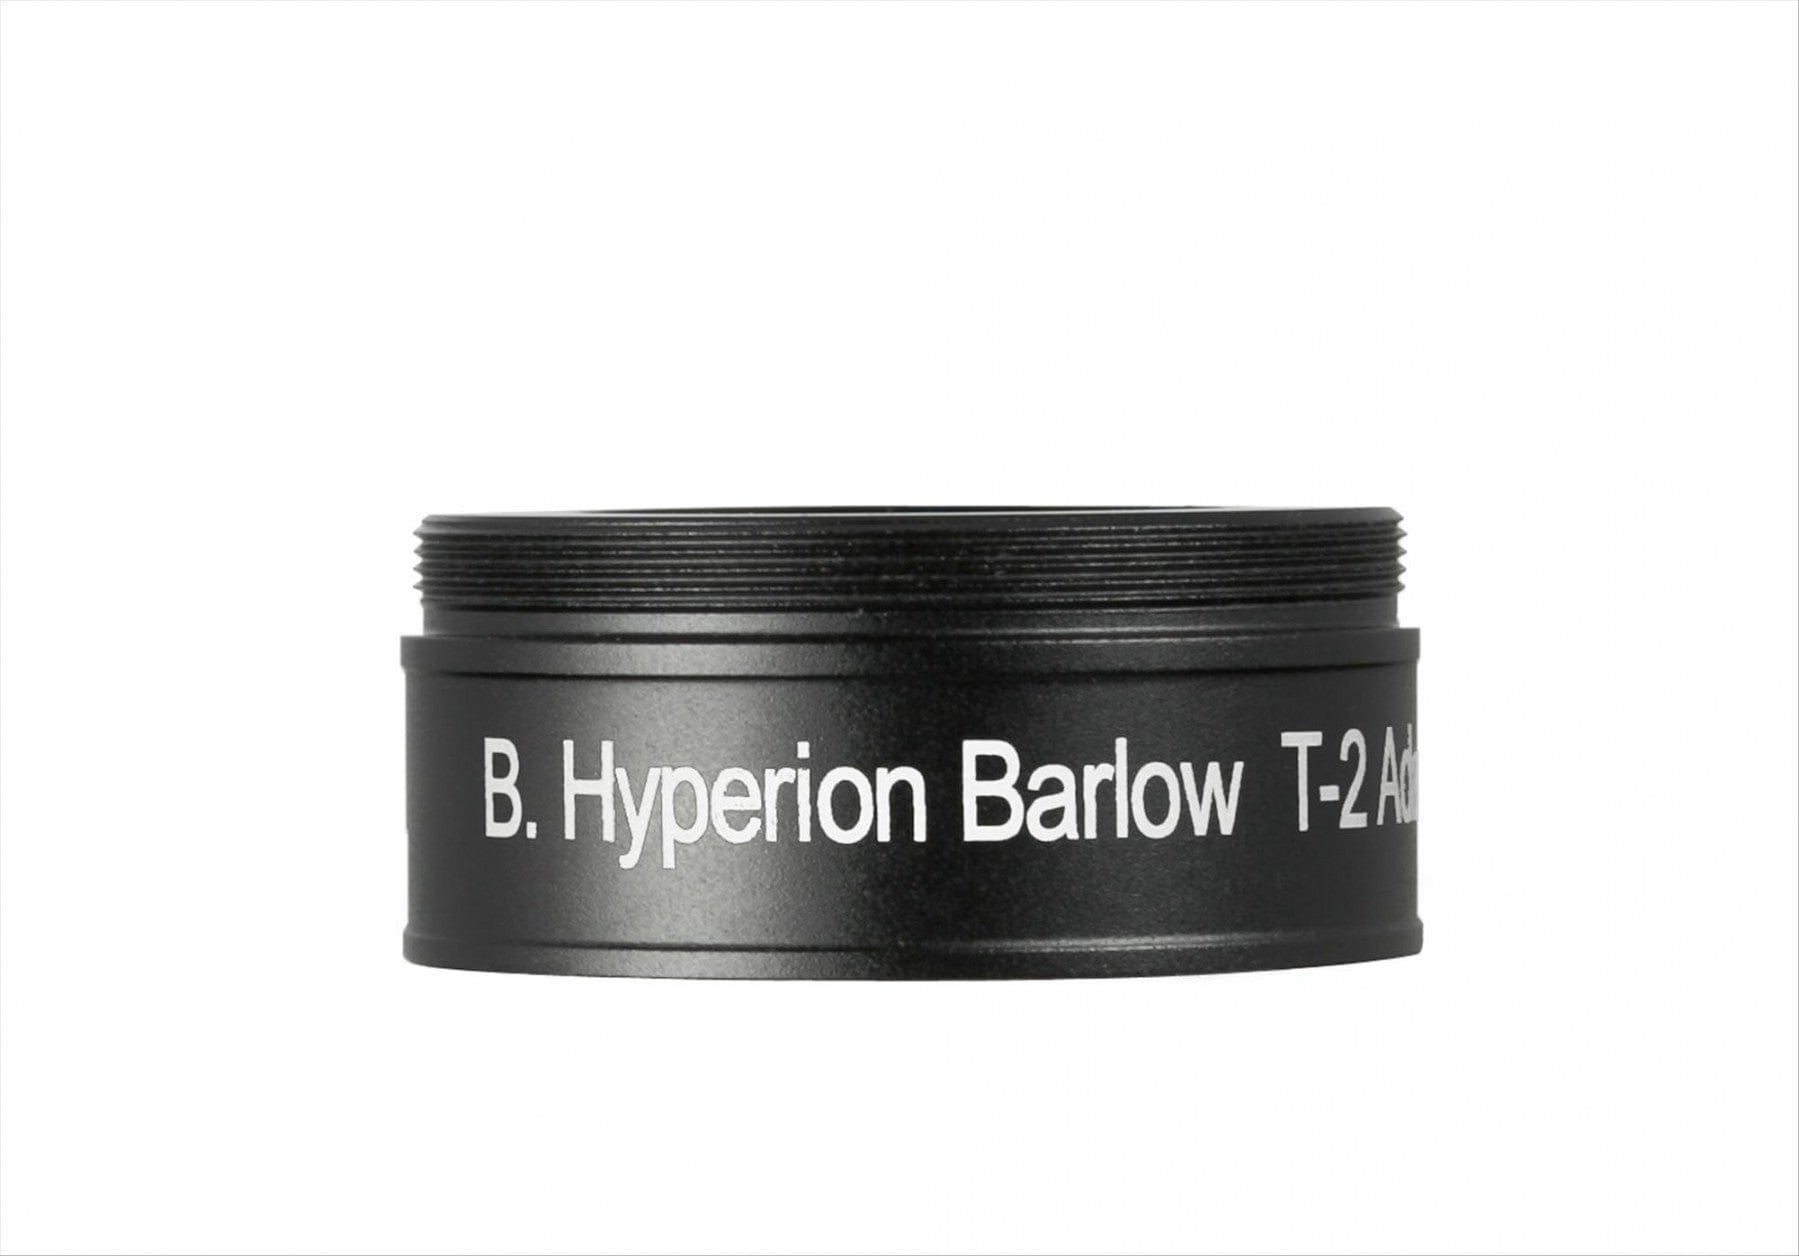 Baader Planetarium Barlow Baader Hyperion Zoom Barlow 2.25X - 2956180